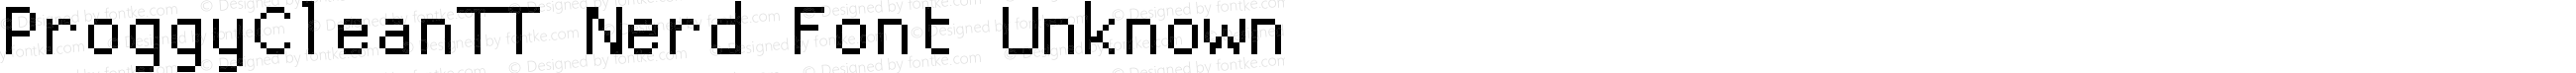 ProggyCleanTT Nerd Font Plus Font Awesome Plus Font Linux Mono